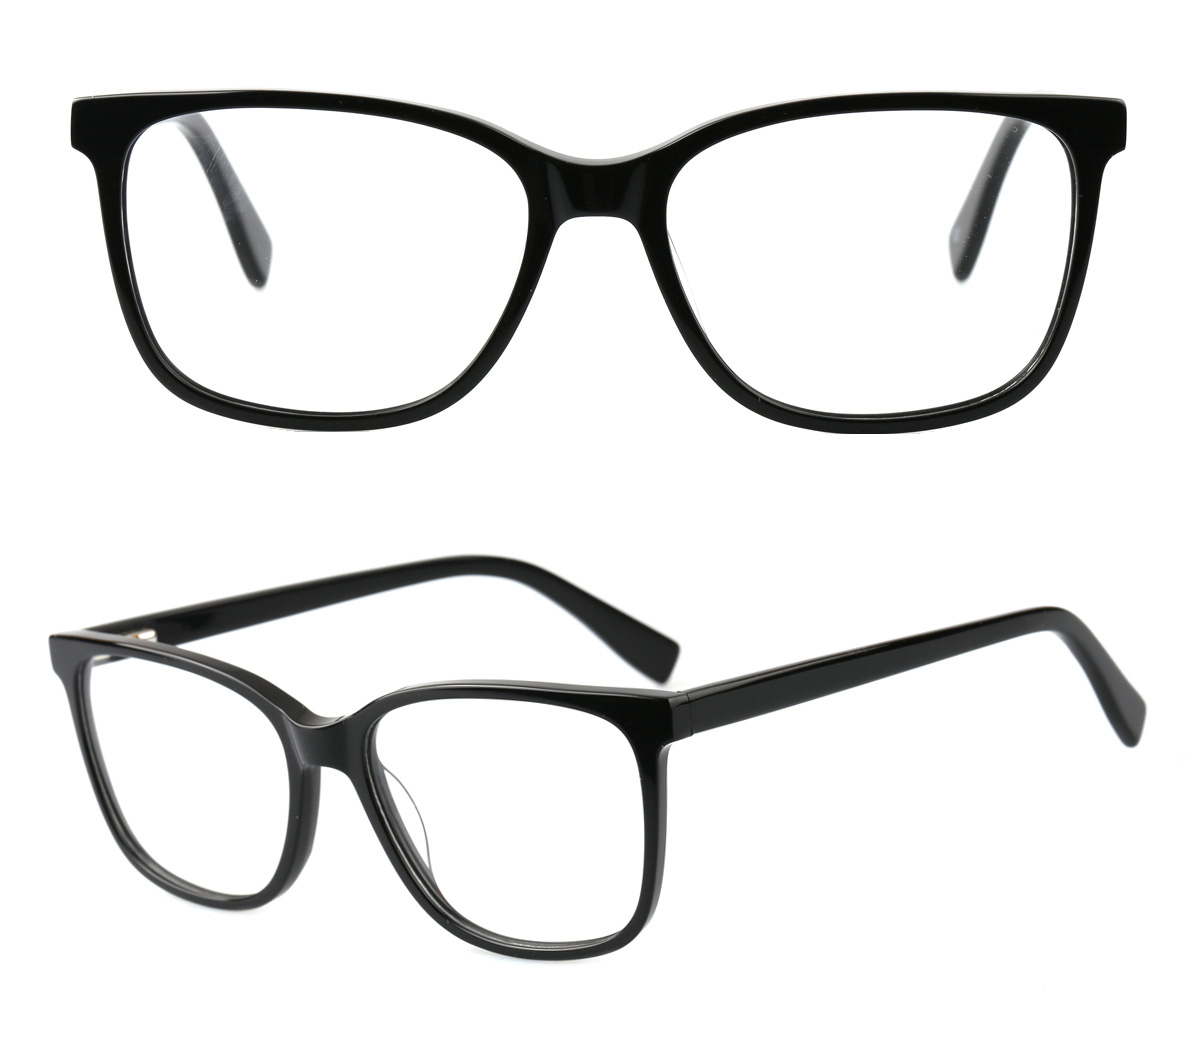 Clear Acetate Glasses Frames Wholesale,Transparent Optical Frames Manufacturer